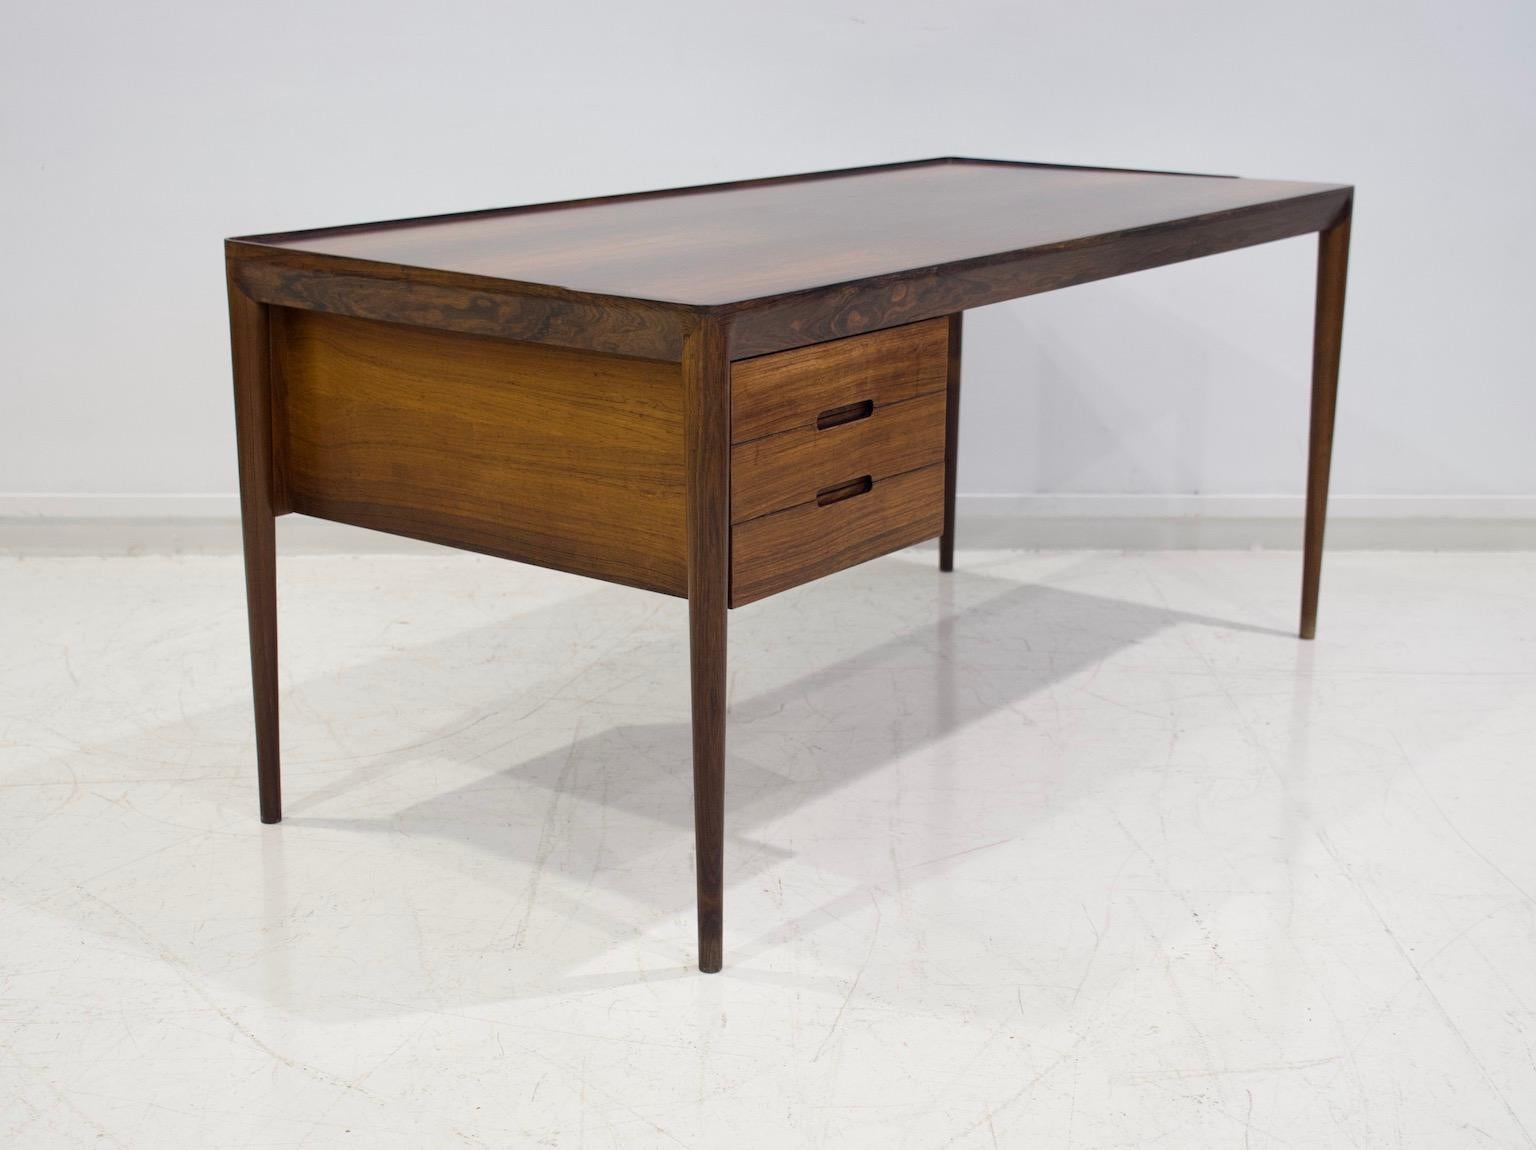 Minimalist Wooden Desk with Raised Edge by Erik Riisager Hansen 1